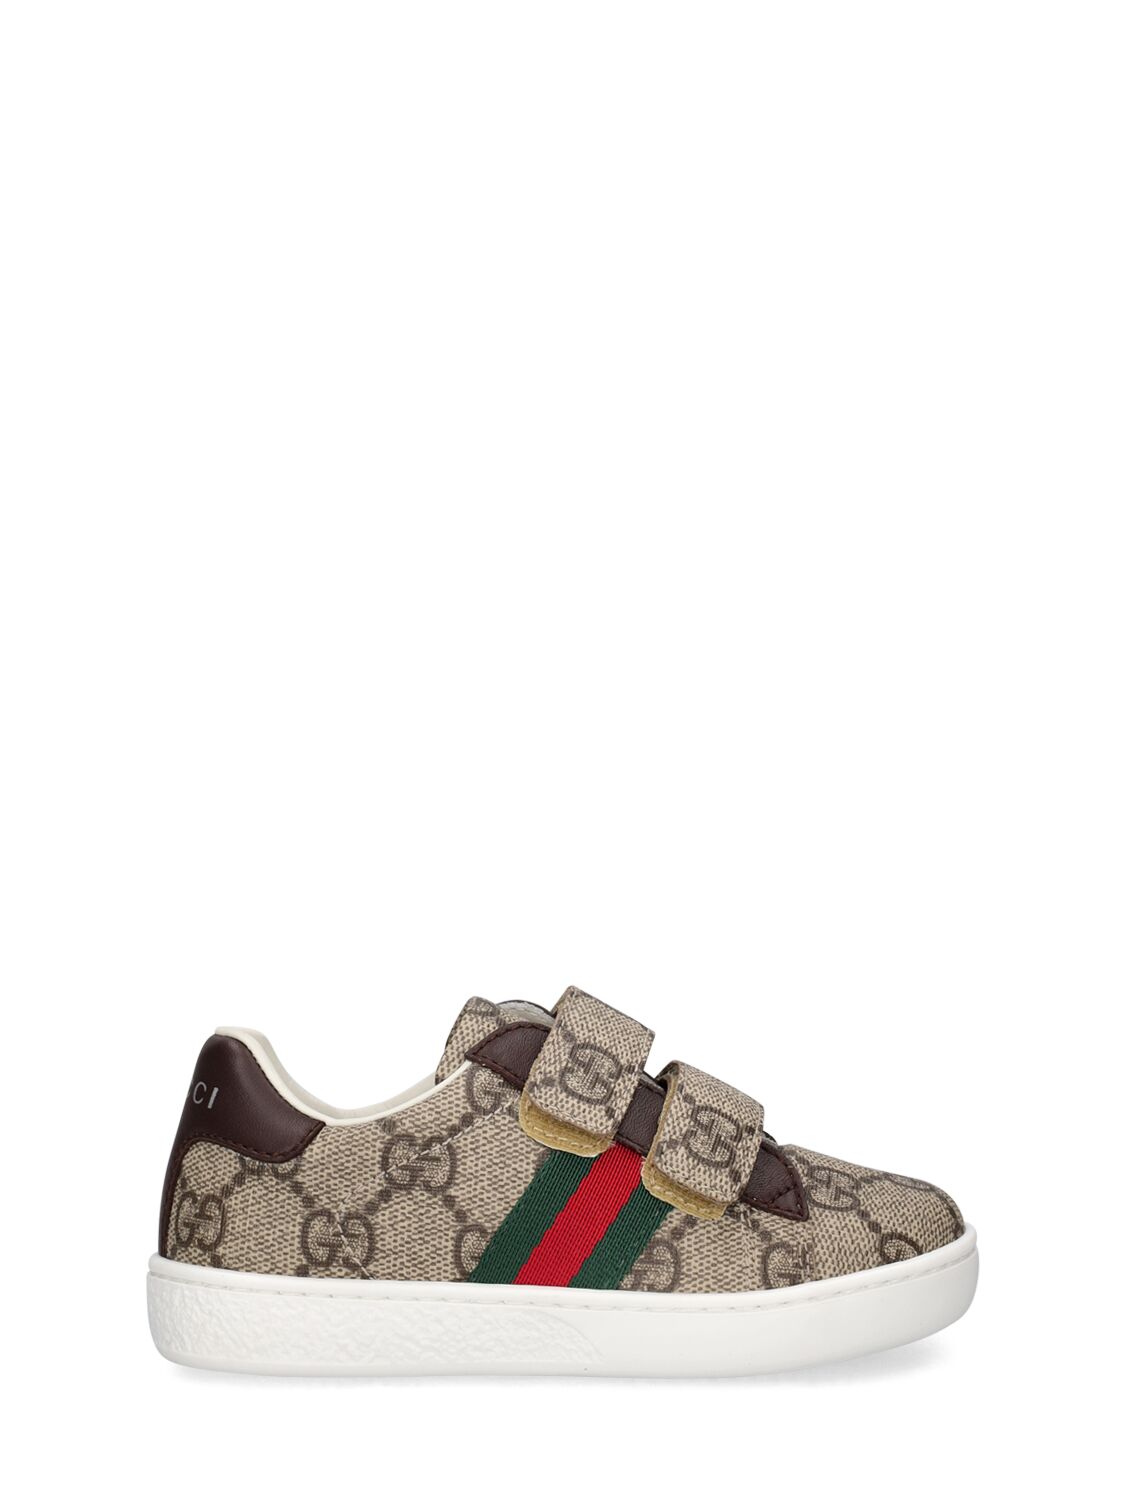 Gucci Kids' Gg Supreme Sneakers In Beige,ebony